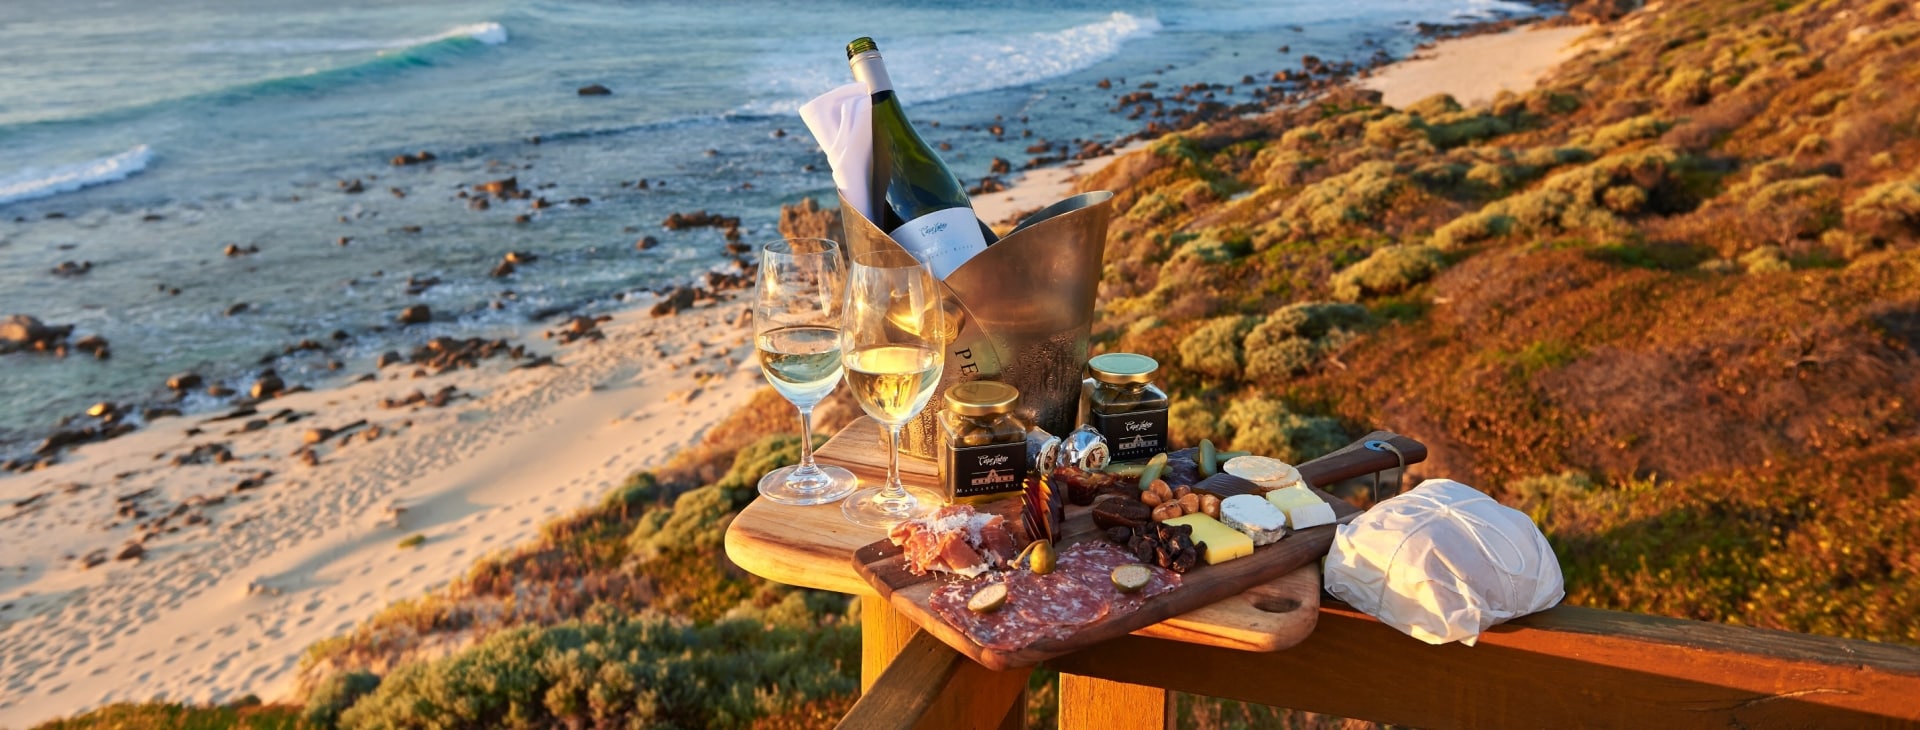 Piatto di prodotti locali e vino sulla spiaggia, Cape Lodge, Margaret River, Western Australia © Frances Andrijich